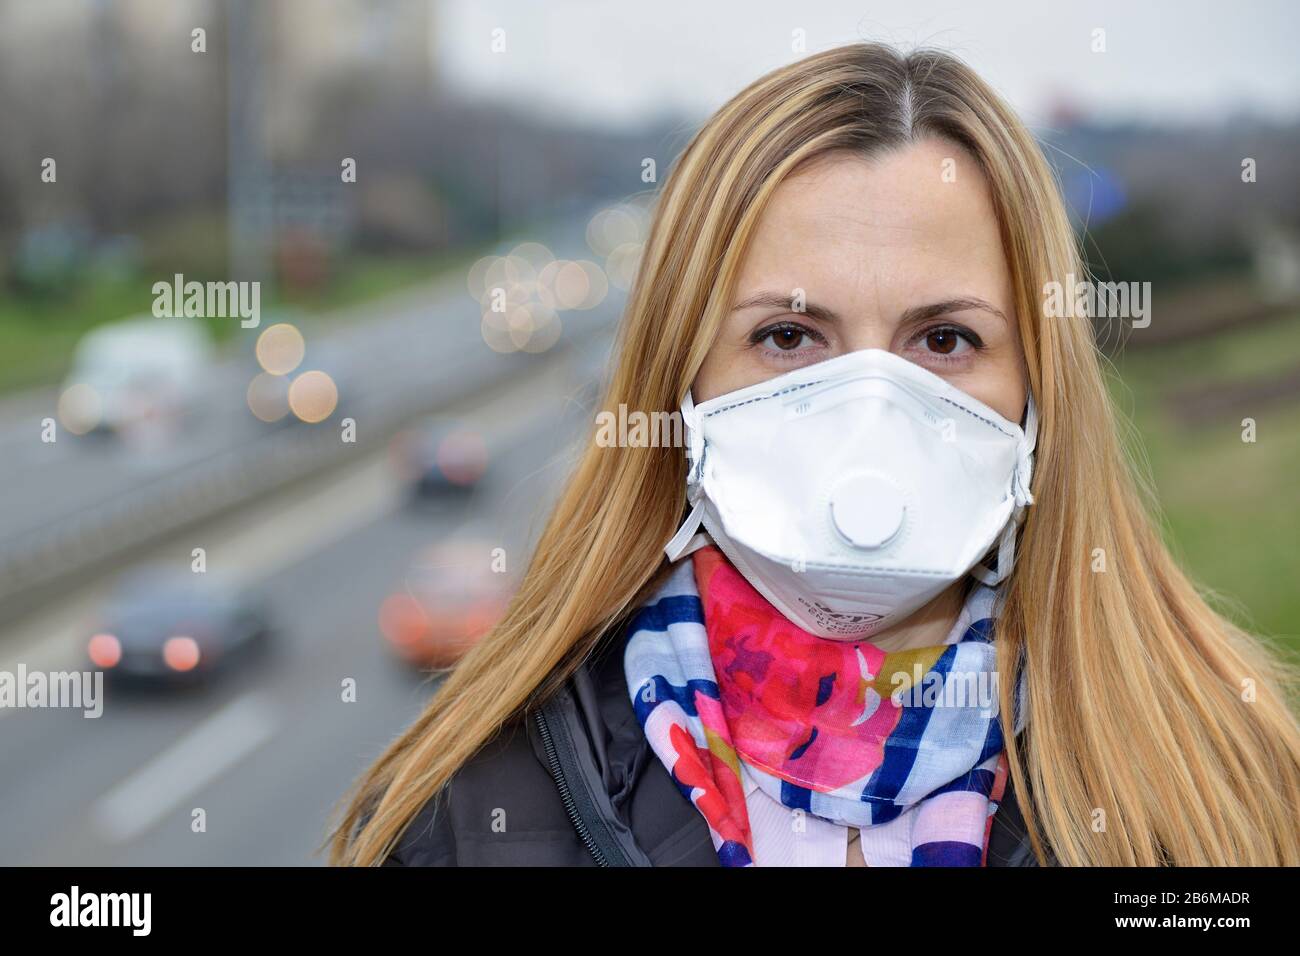 Coronavirus-Epidemie, Frau trägt eine Gesichtsmaske in der Stadt Straße als die Zahl der Covid 19 Virus-Fälle in ganz Europa weiter wächst, Belgrad, Serbien Stockfoto